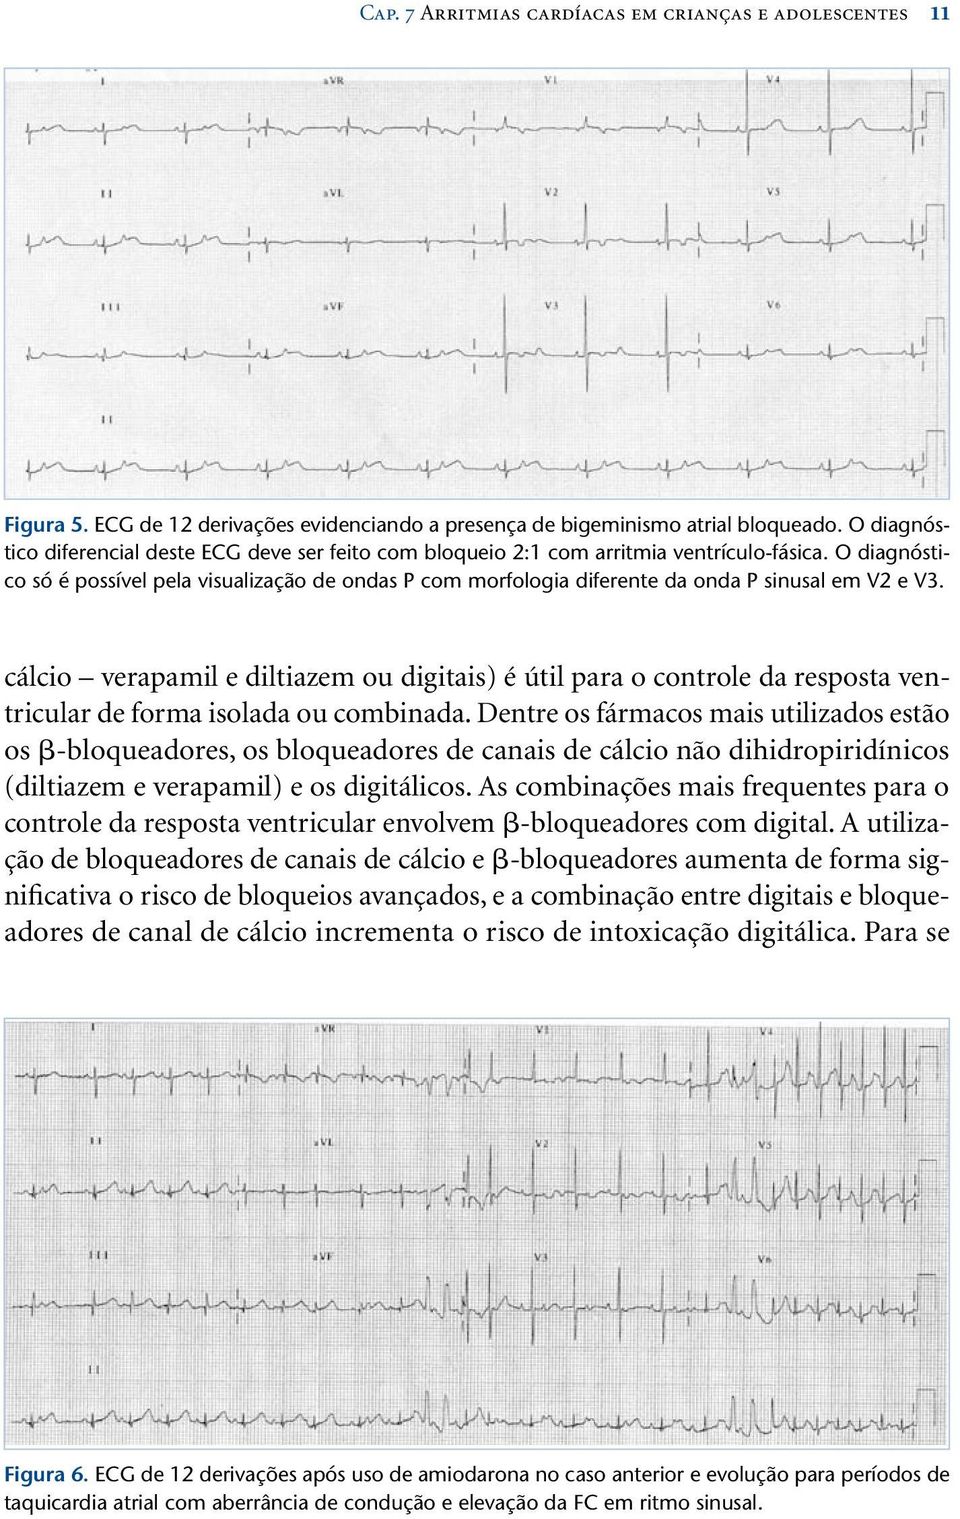 O diagnóstico só é possível pela visualização de ondas P com morfologia diferente da onda P sinusal em V2 e V3.